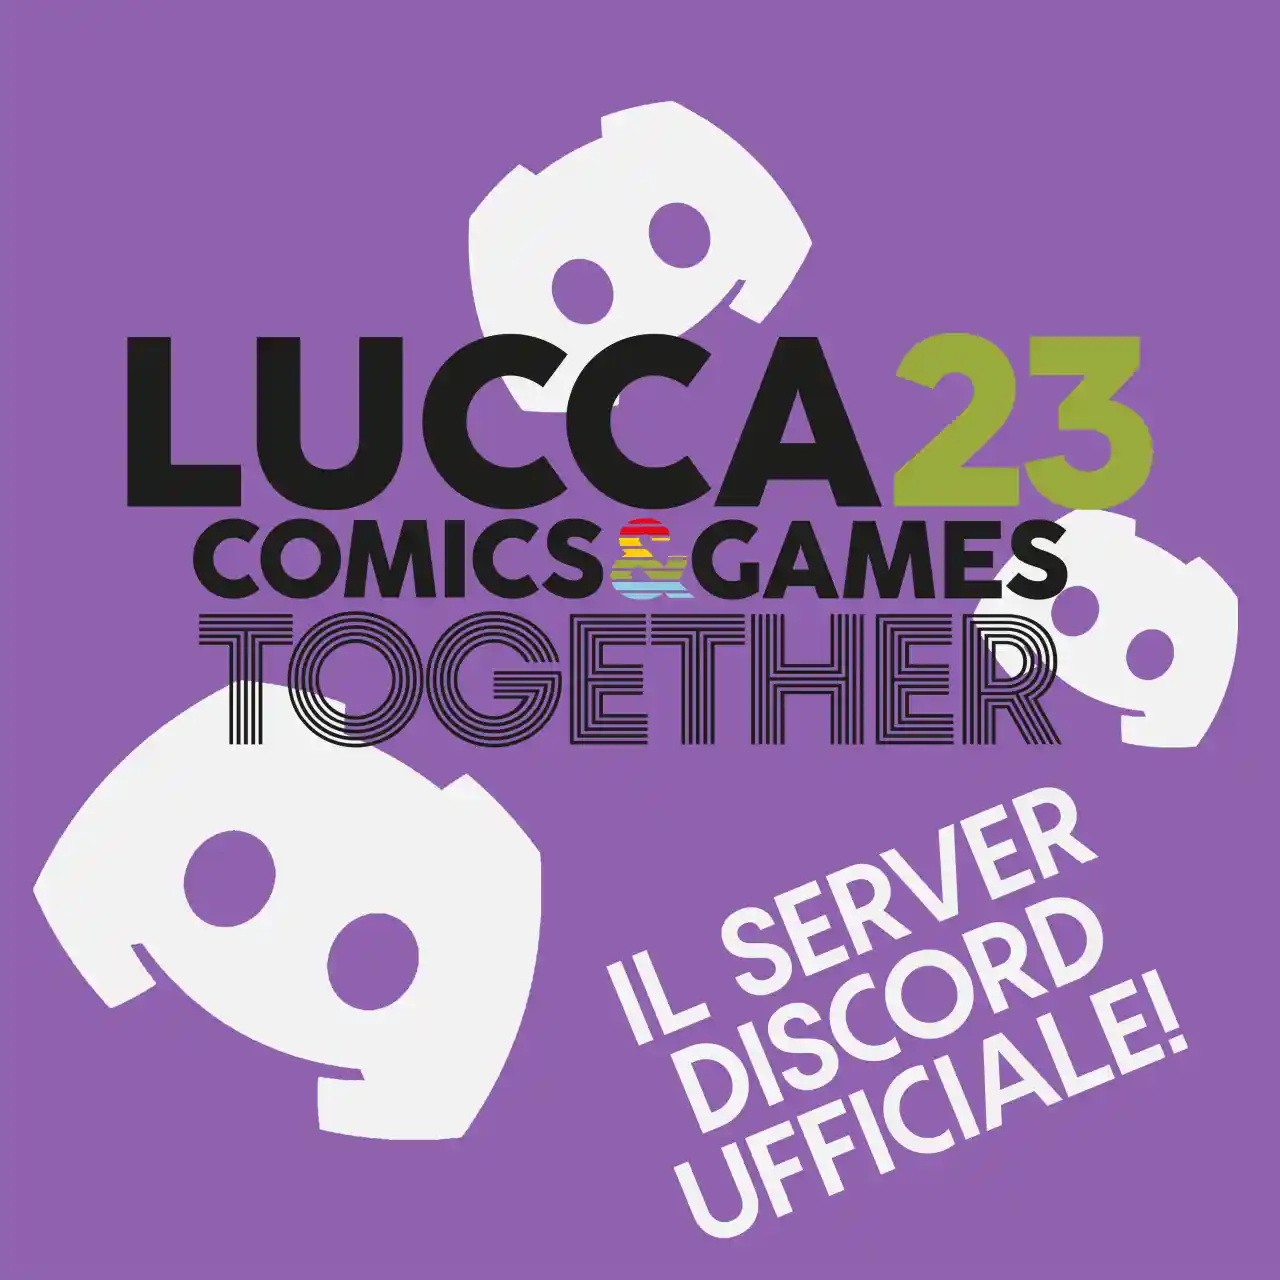 Lucca Comics & Games, aperto un server Discord ufficiale